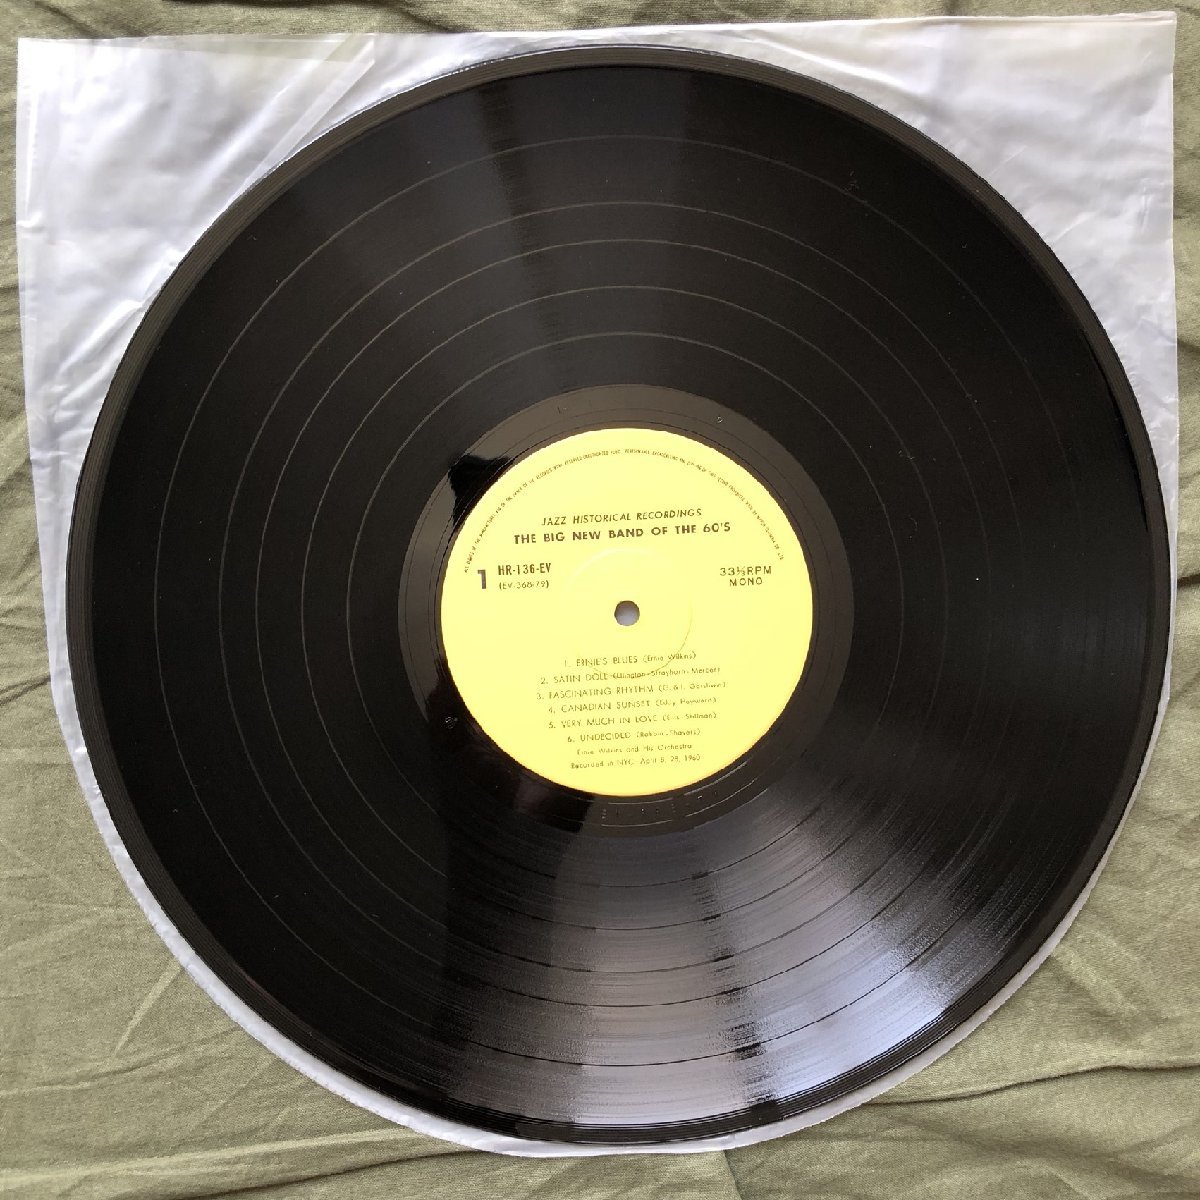 原信夫Collection 傷なし美盤 美ジャケ 新品並み 1973年 国内盤 Ernie Wilkins LPレコード The Big New Band Of The 60's: Kenny Burrell_画像9